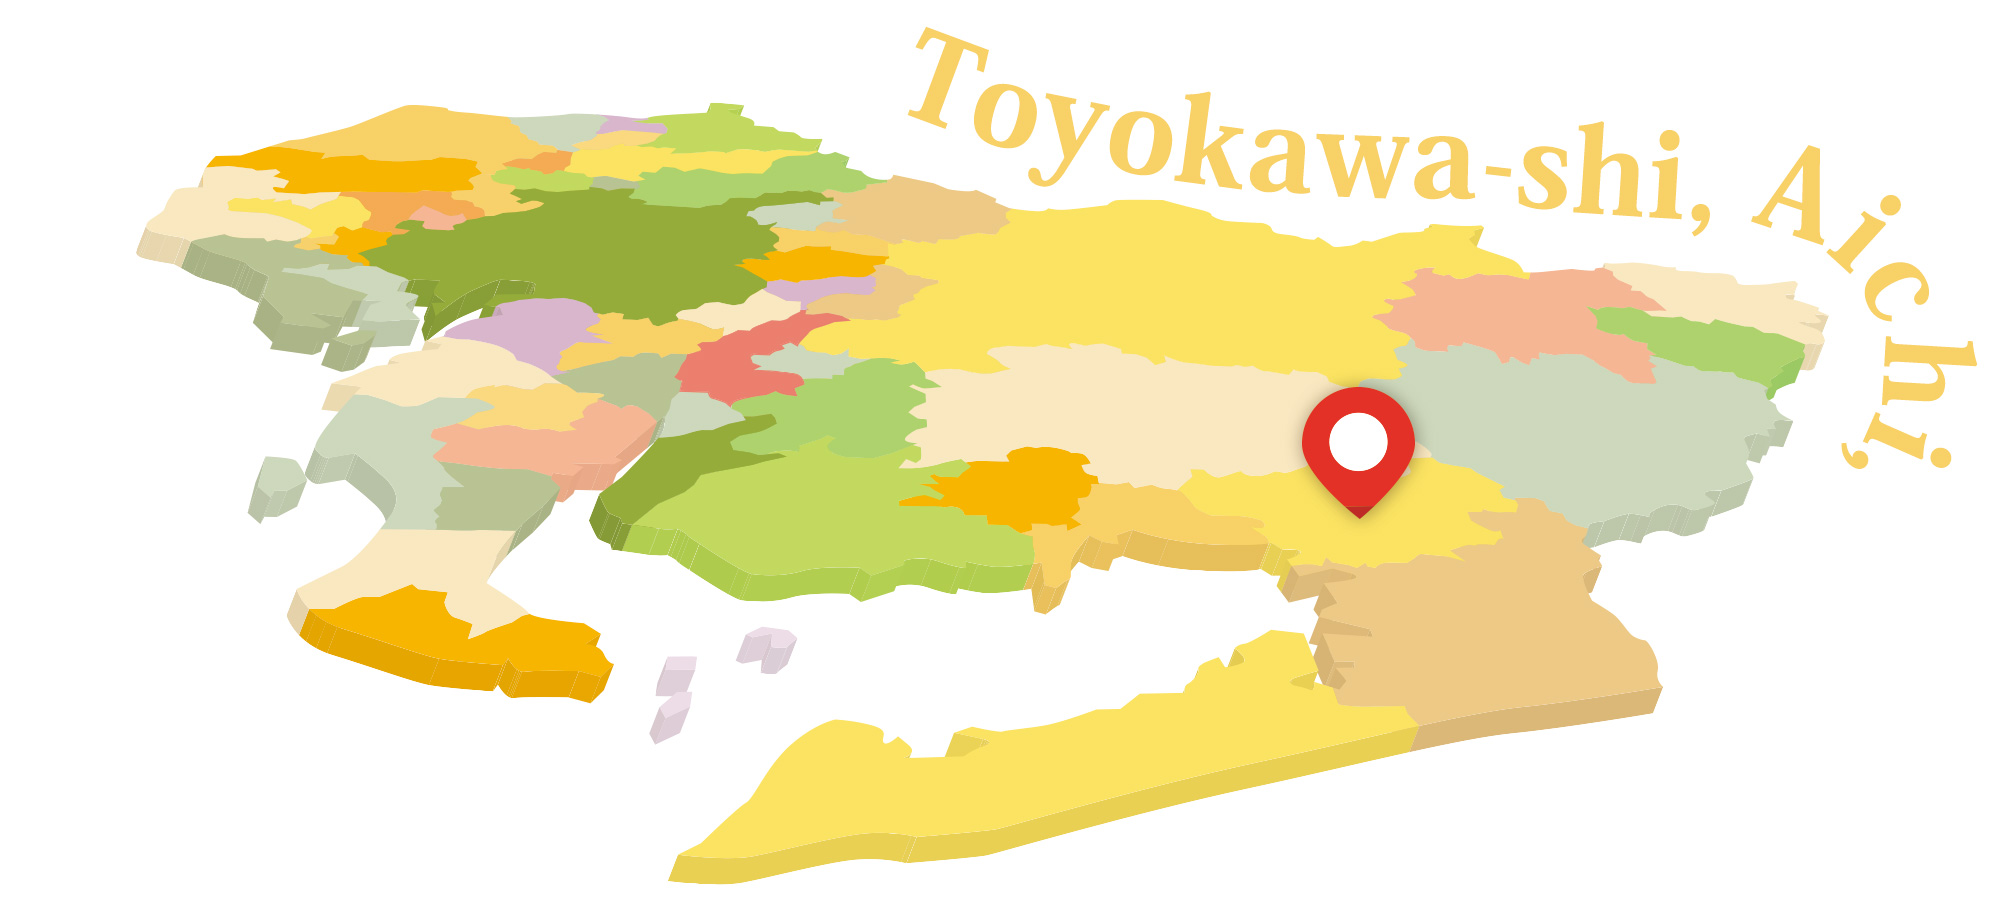 愛知県豊川市や、豊川市近郊でパンフレットやリーフレット制作を行う広告制作会社をお探しなら。